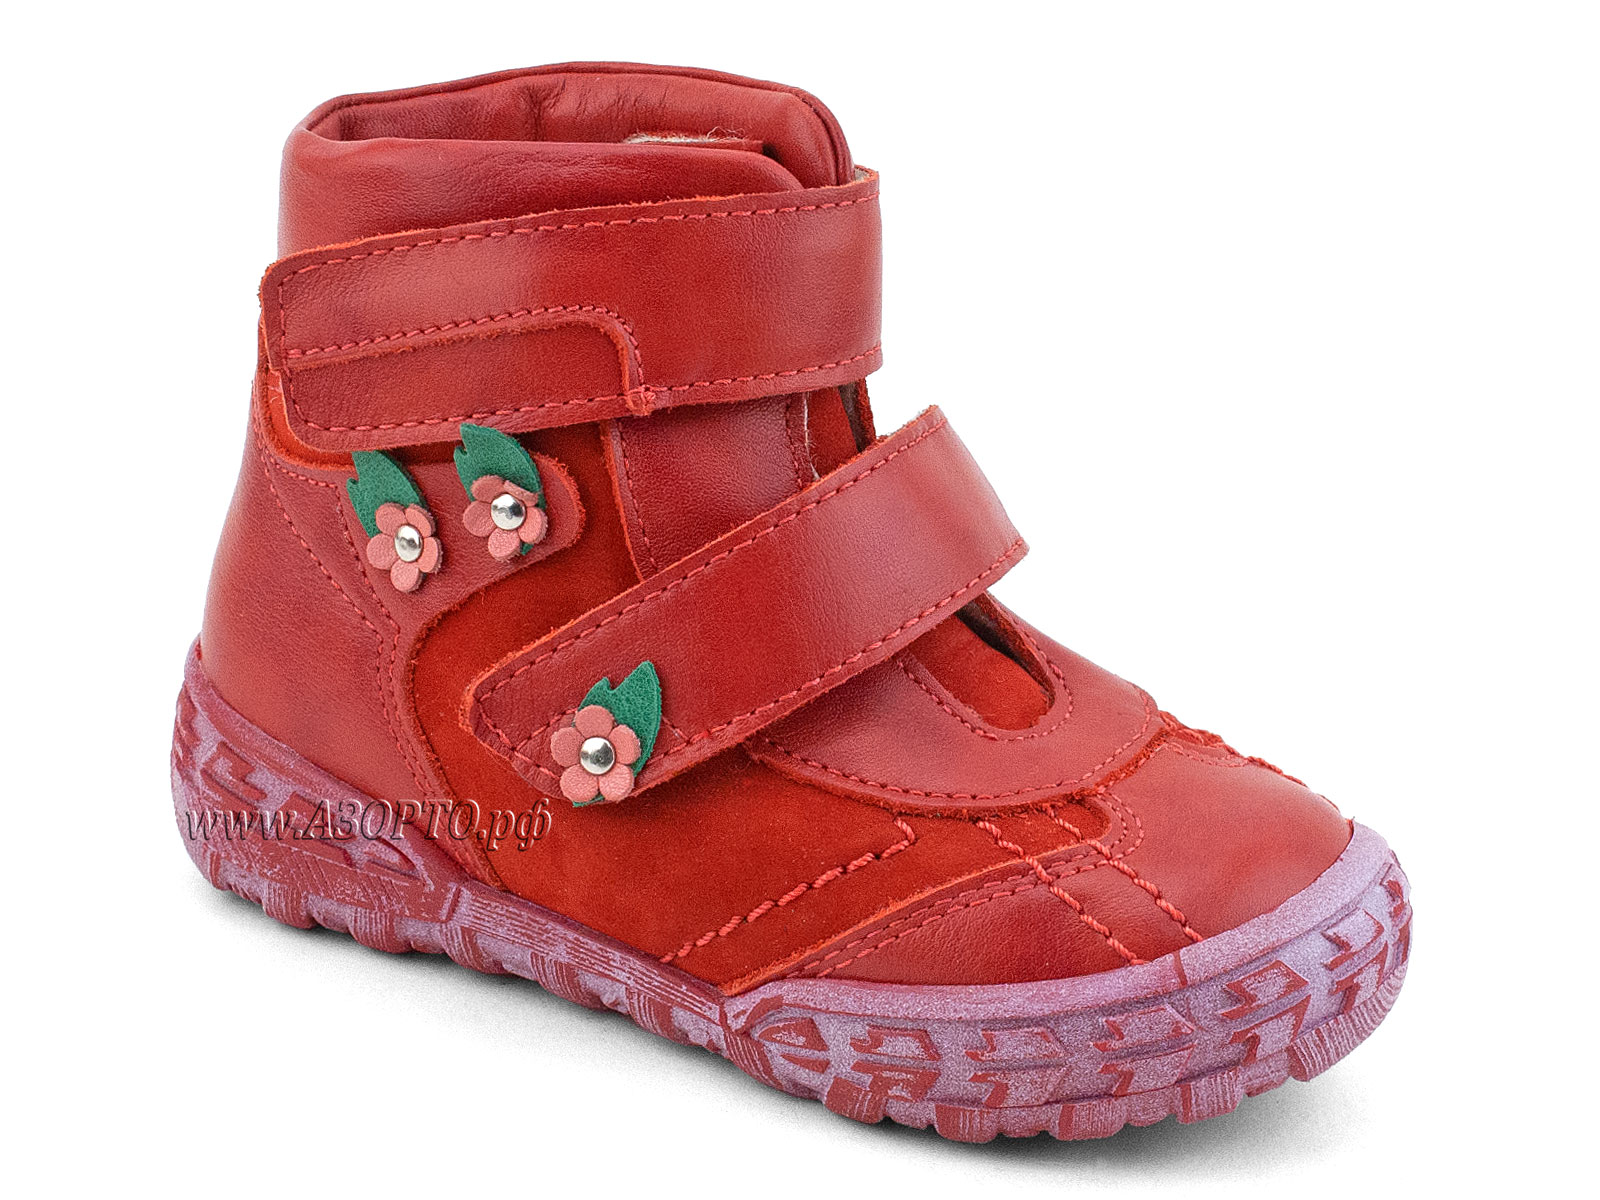 238-196,186 Тотто (Totto), ботинки демисезонные утепленные, байка,  кожа,нубук,  красный,